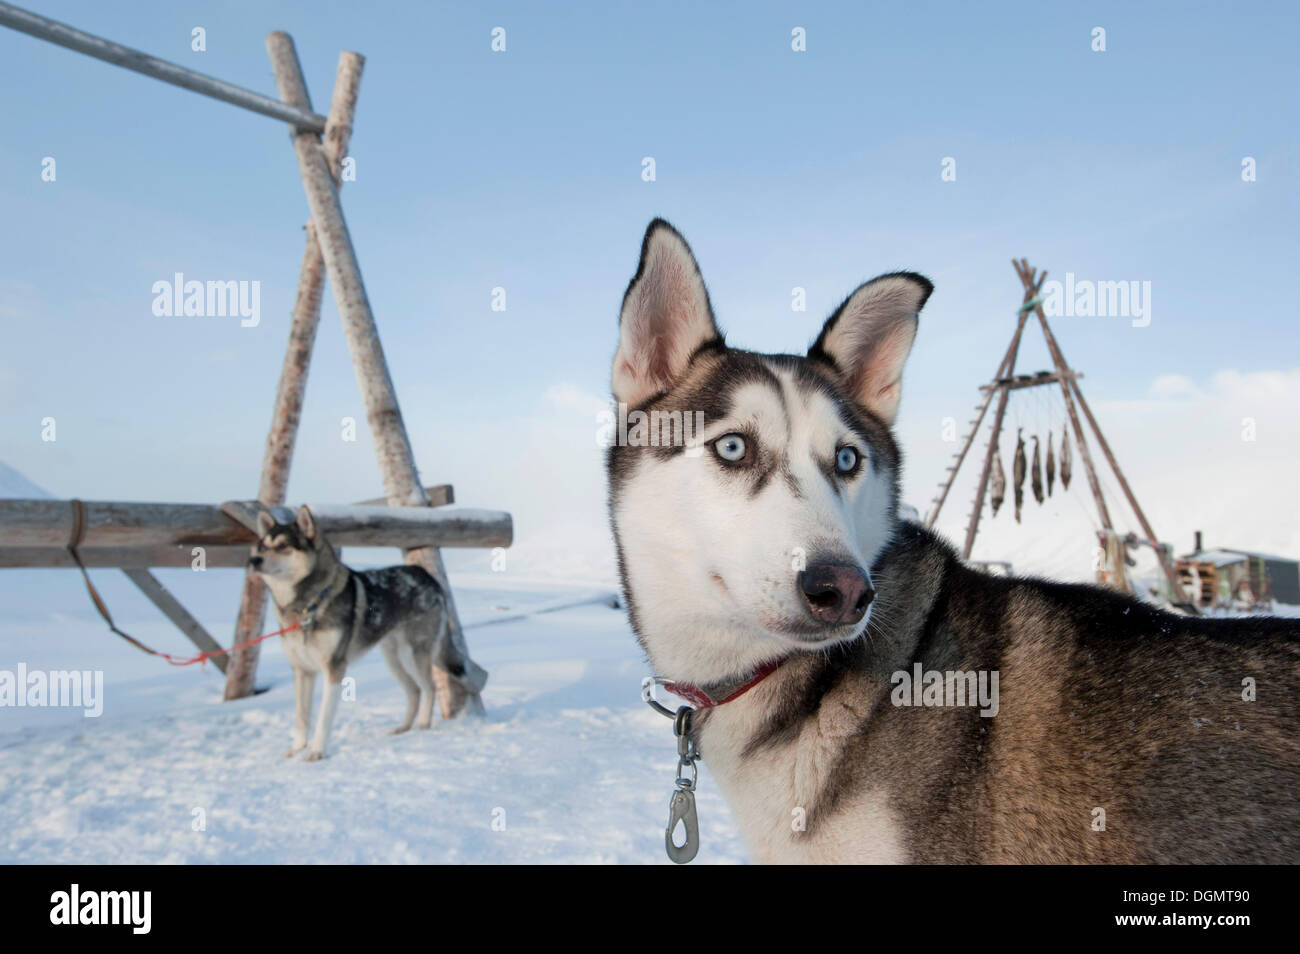 Les Huskies d'Alaska, les chiens de traîneau avant de séchoirs traditionnels pour suspendre les phoques morts, Spitsbergen Basecamp, Adventdalen Banque D'Images